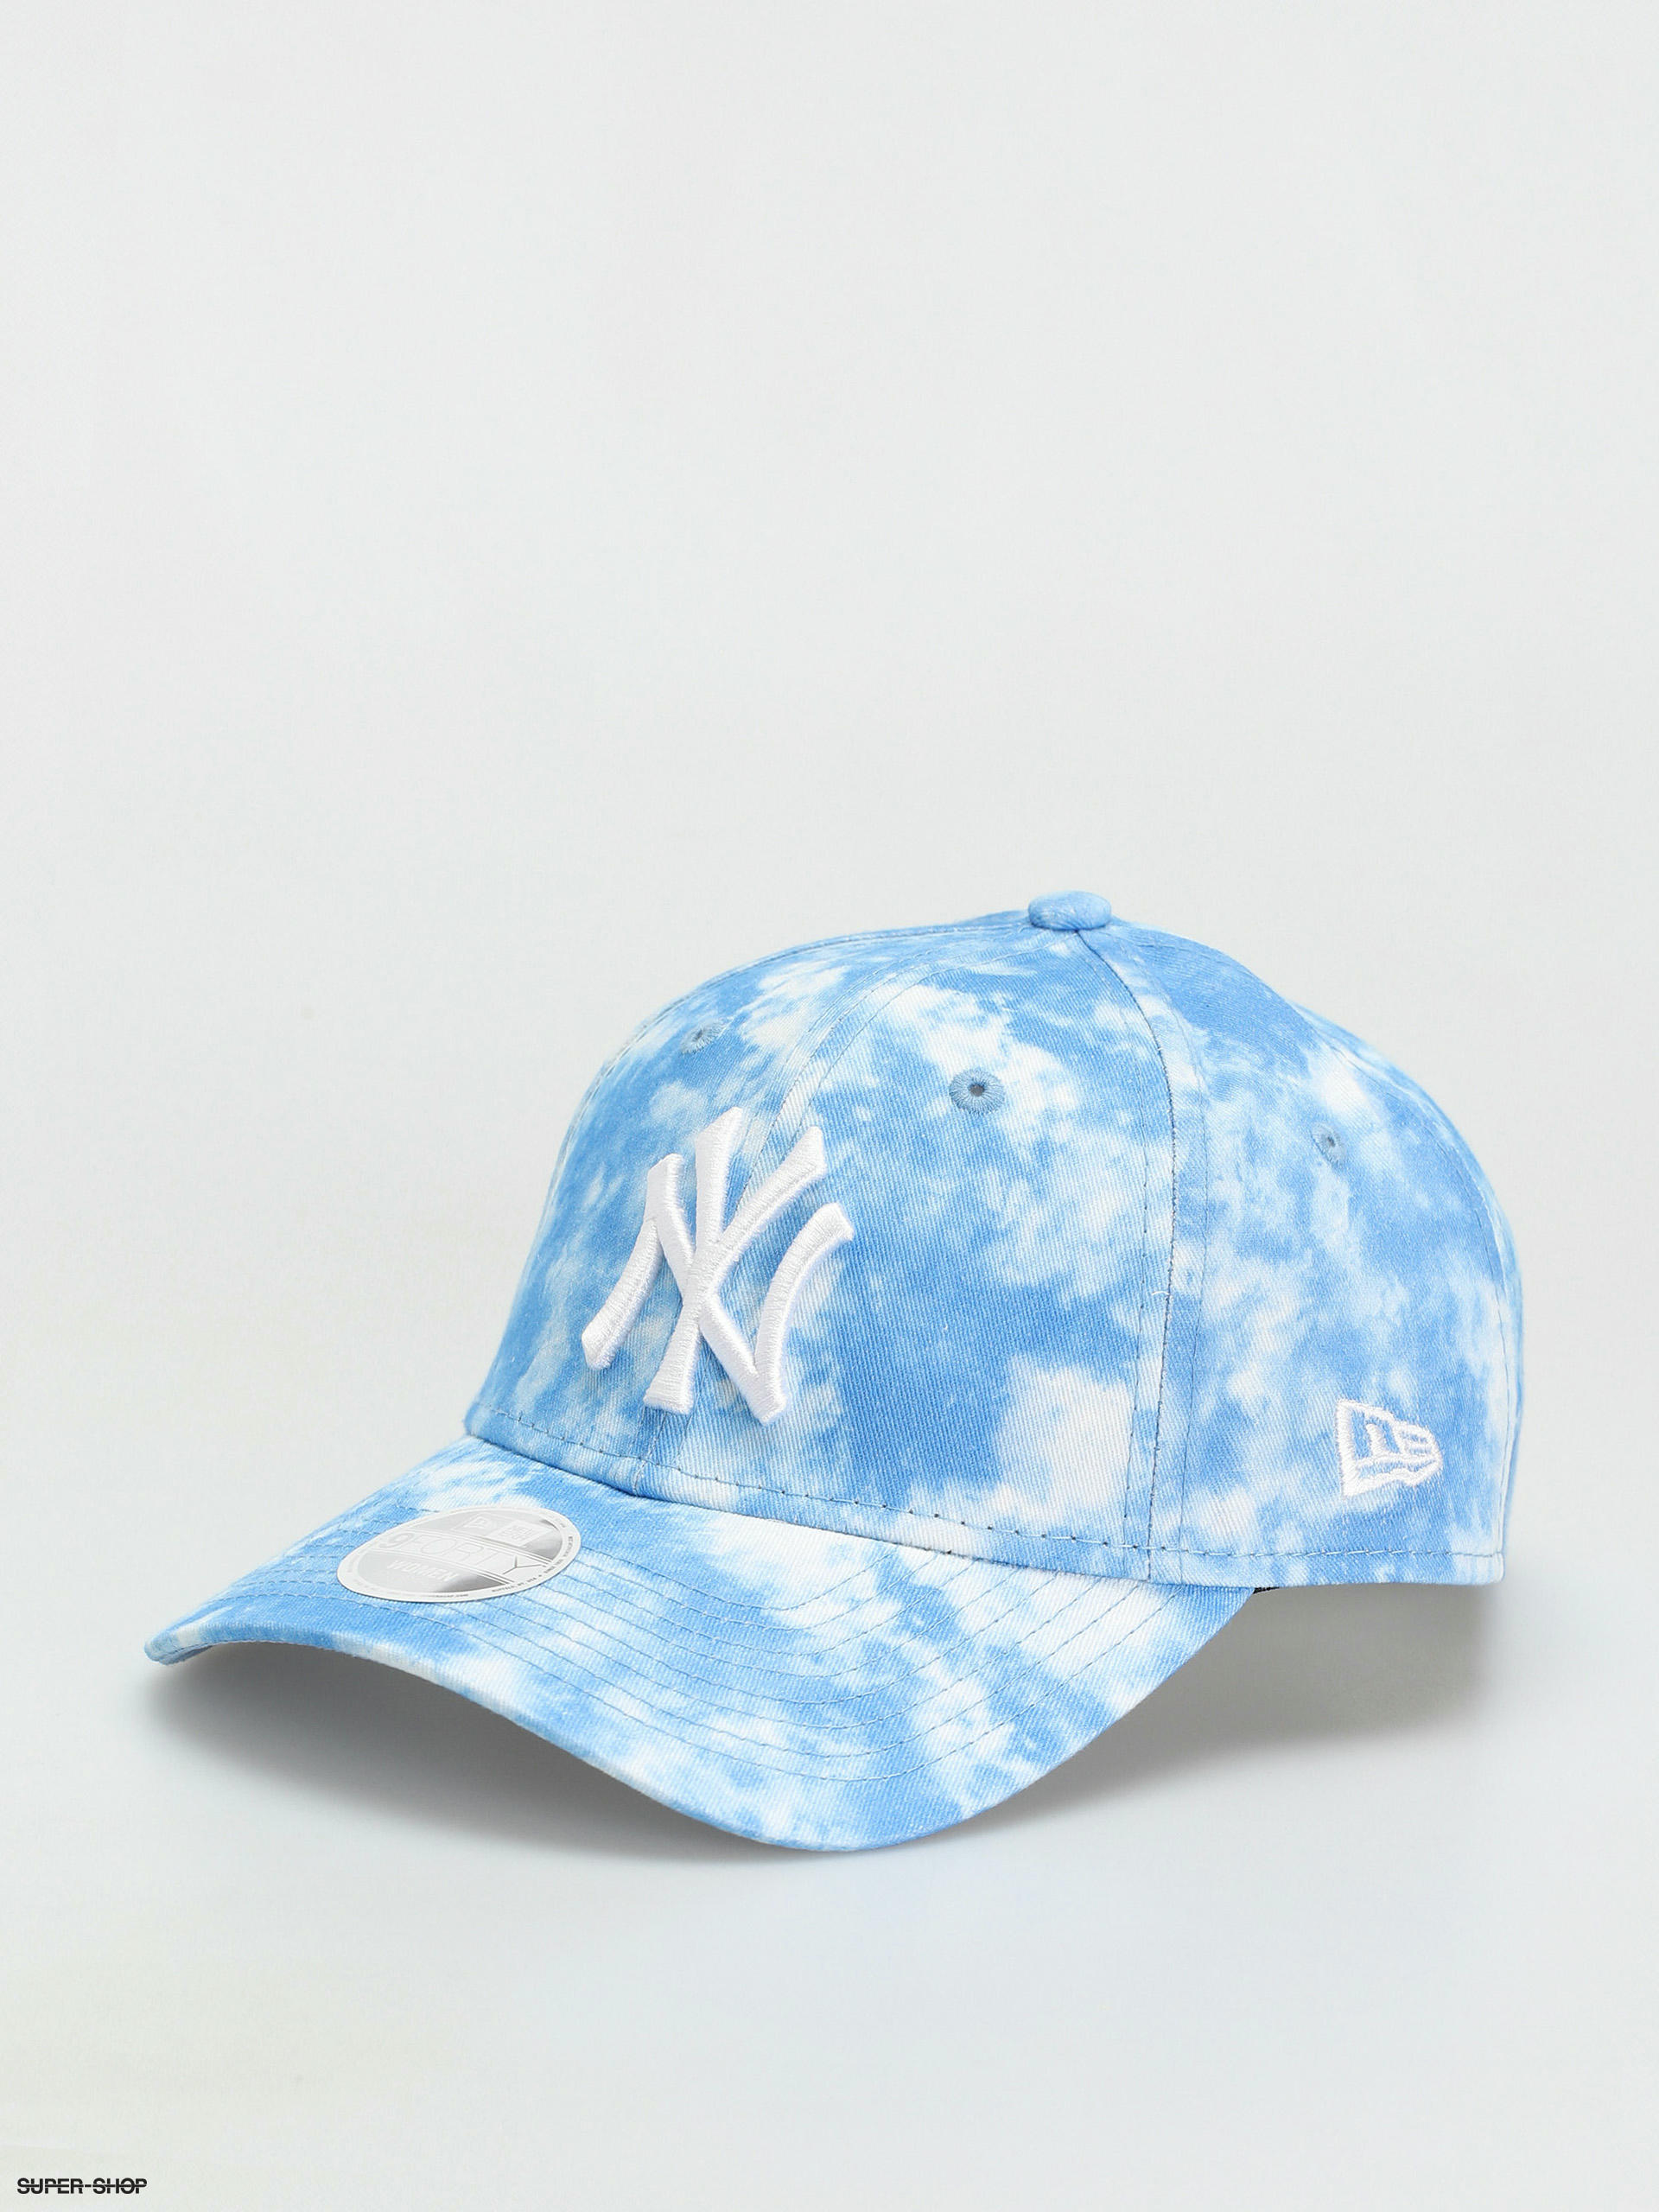 cap New Era 9FO Tie Dye MLB New York Yankees - Pink/White - women´s 